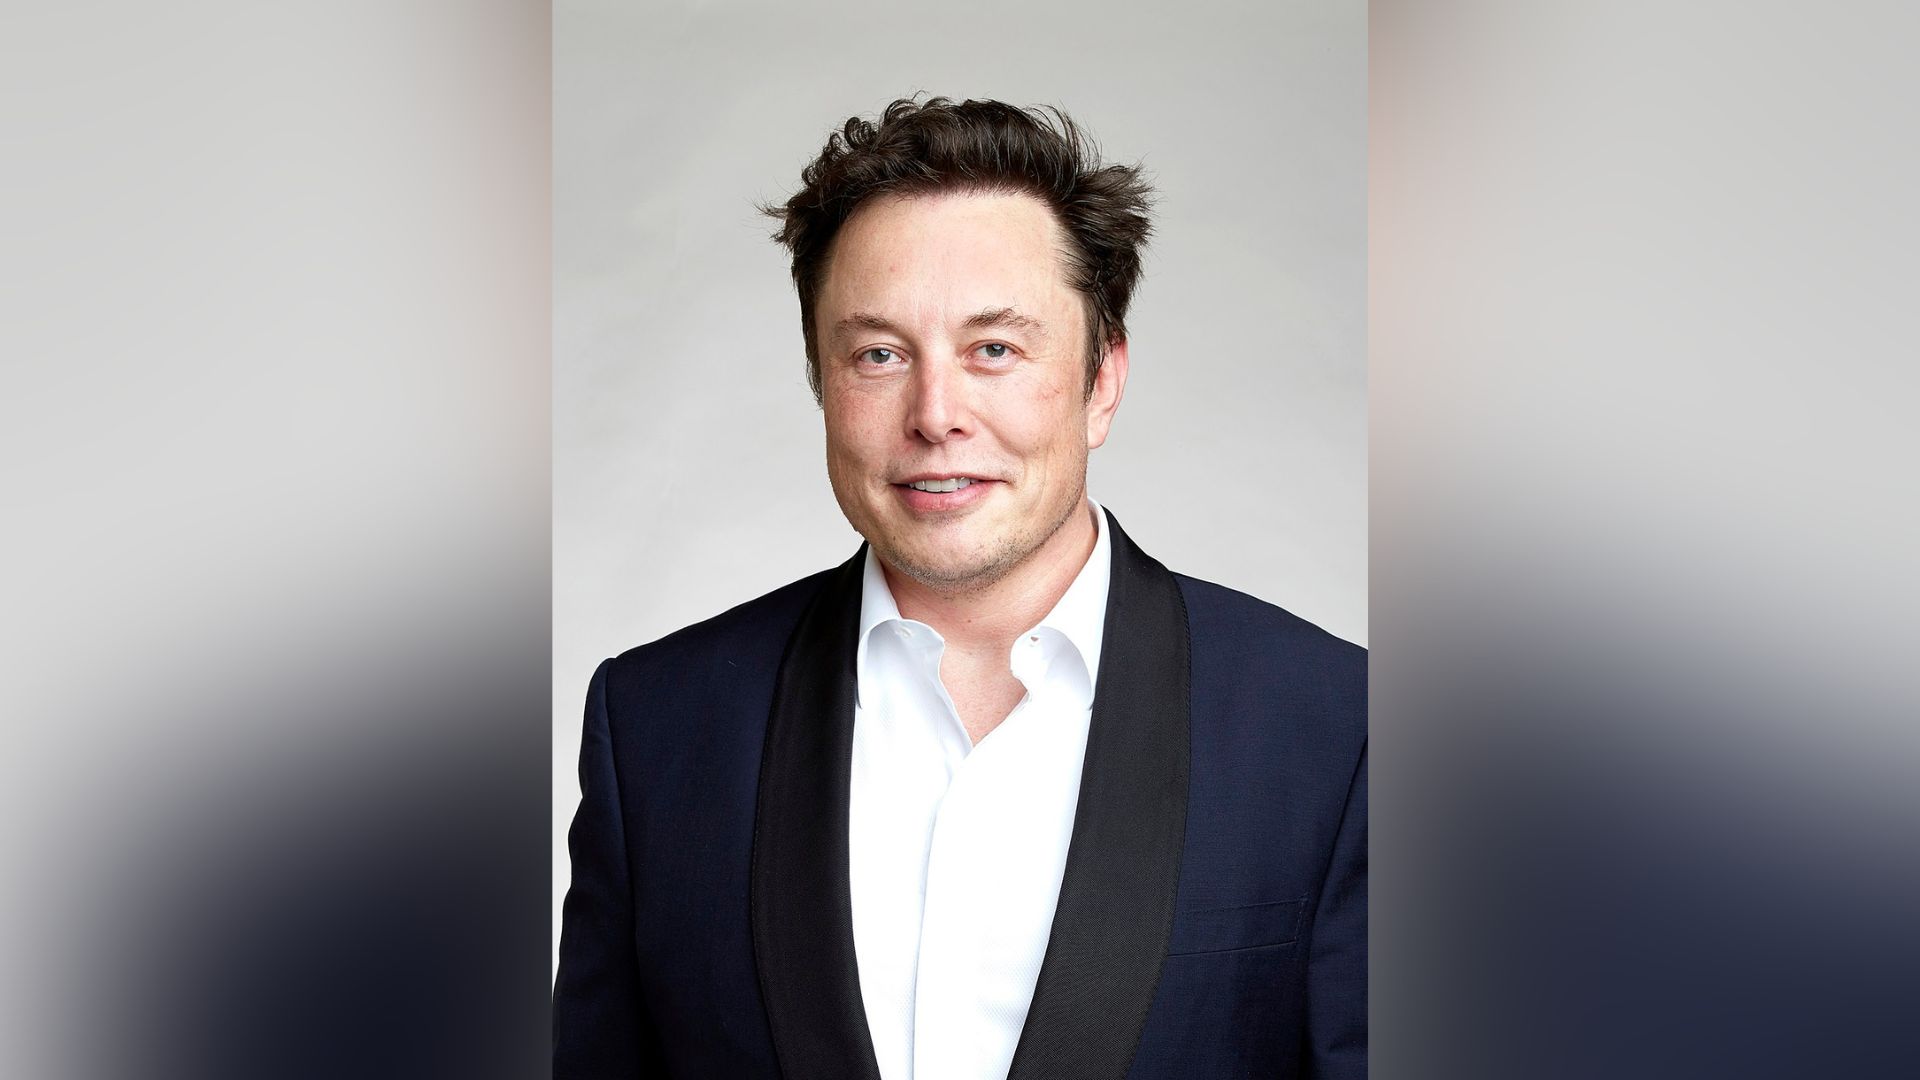 O bilionário Elon Musk